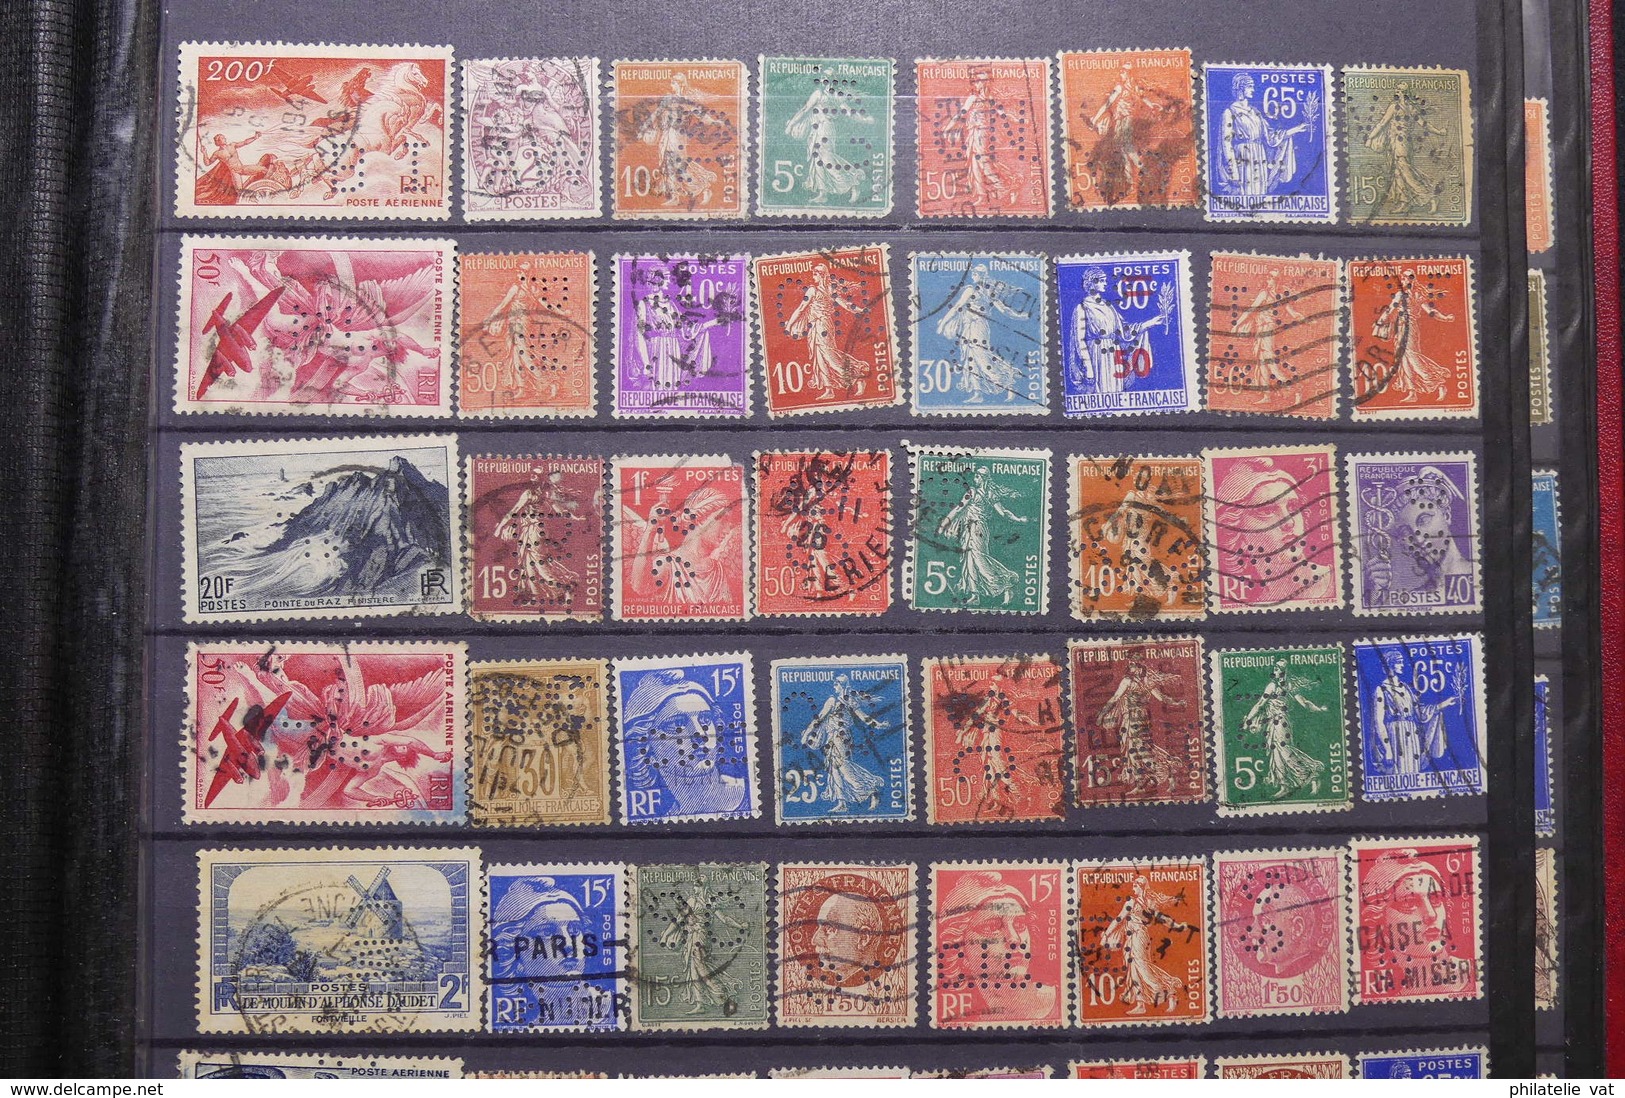 FRANCE - Album de timbres perforés - Plus de 600 pièces - A étudier - Nature - P 22663